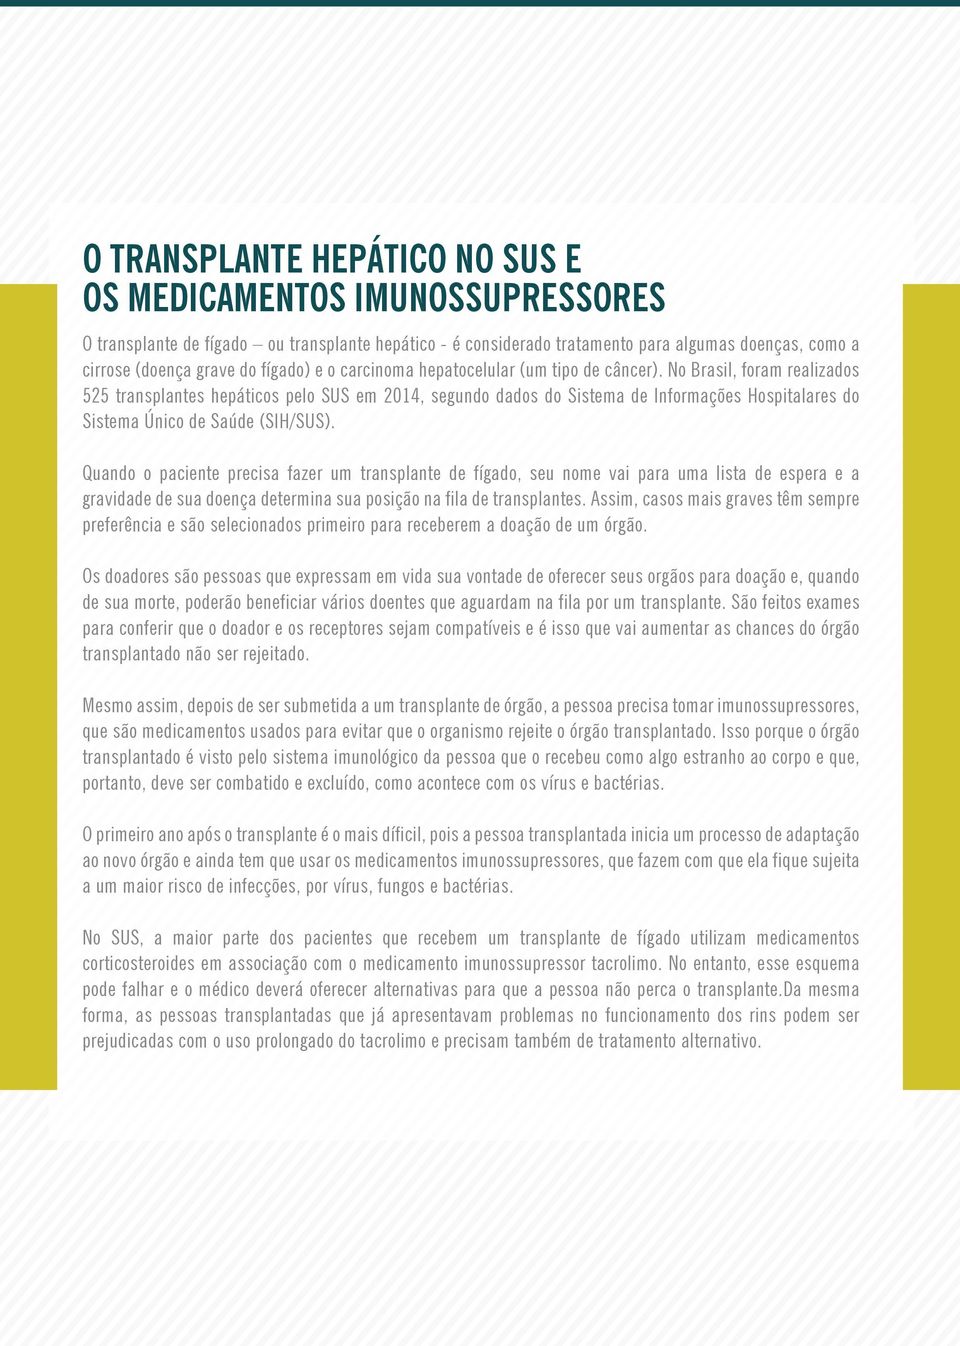 No Brasil, foram realizados 525 transplantes hepáticos pelo SUS em 2014, segundo dados do Sistema de Informações Hospitalares do Sistema Único de Saúde (SIH/SUS).